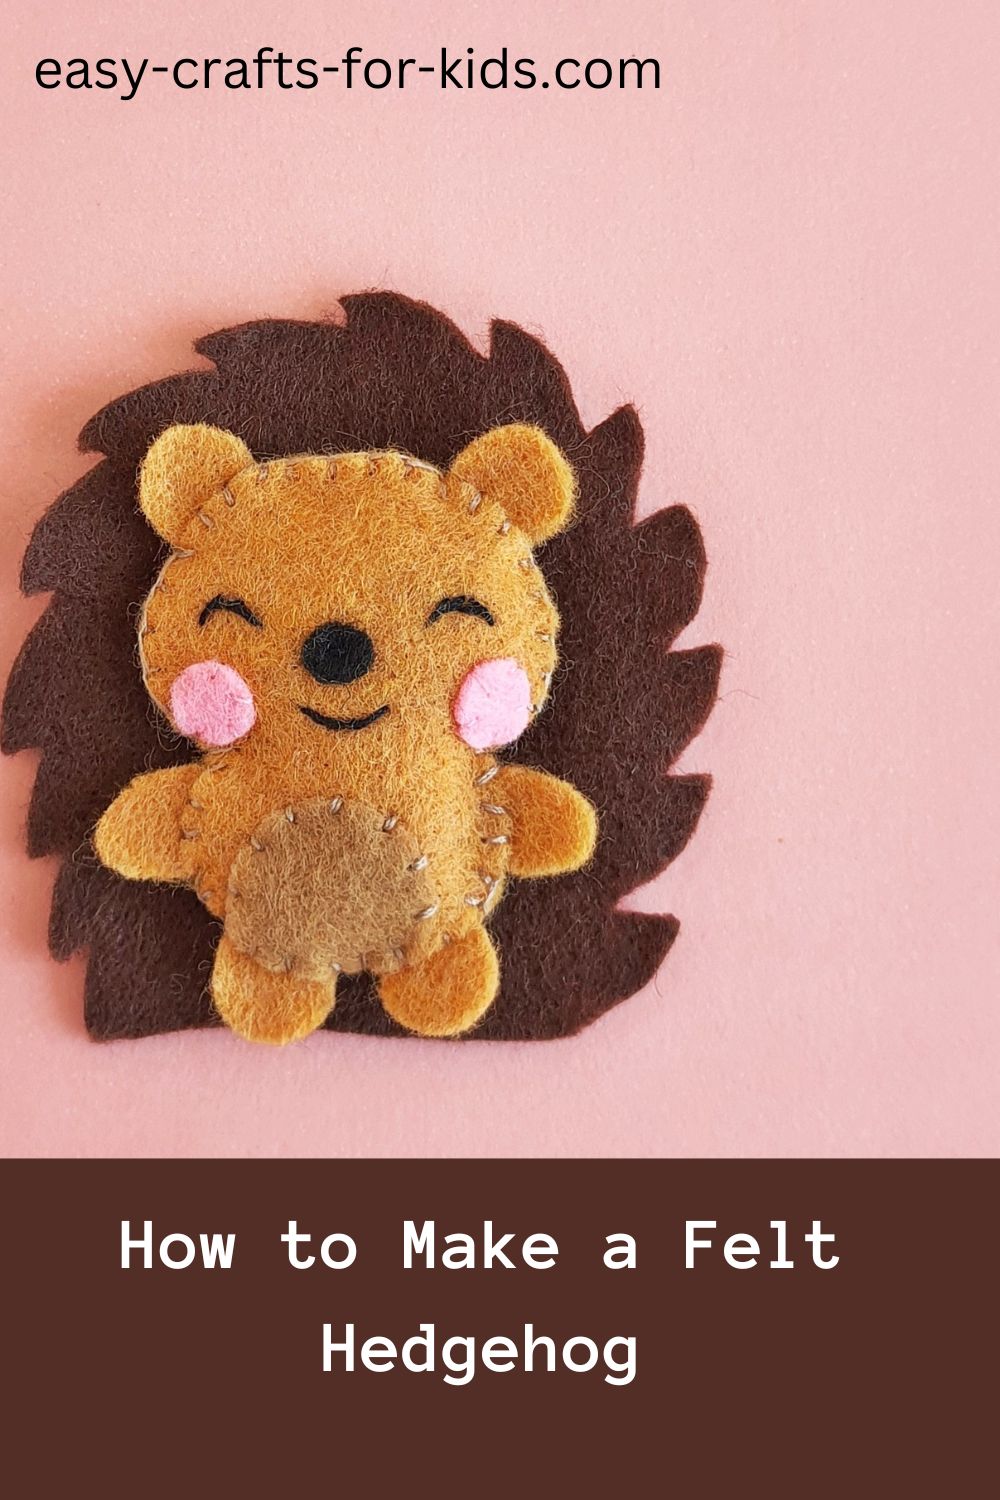 How to Make a Felt Hedgehog